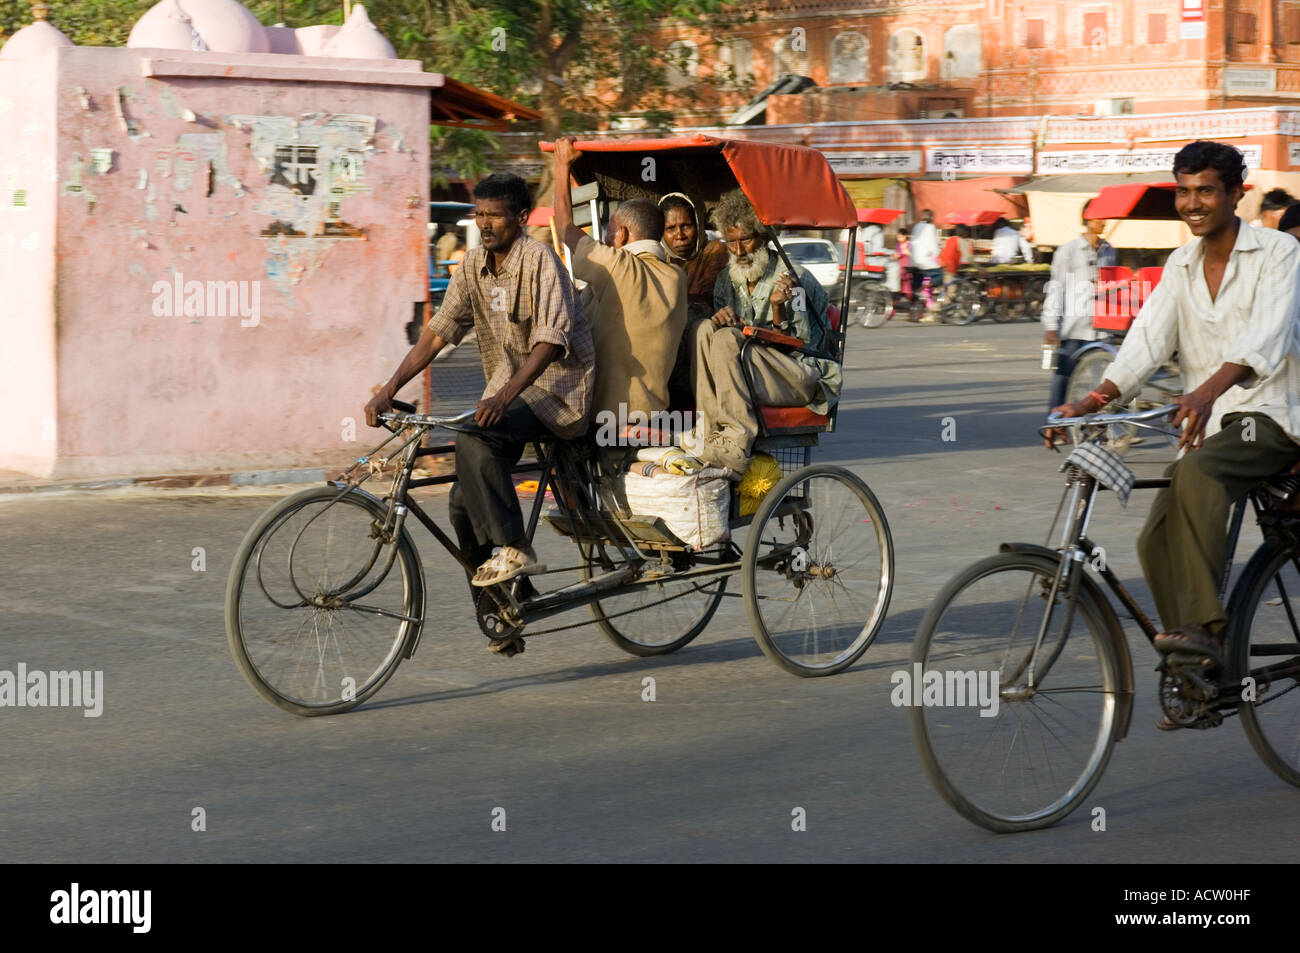 Plusieurs personnes allongées sur un cycle rickshaw et un homme à vélo dans une rue typique scène dans Jaipur. Banque D'Images